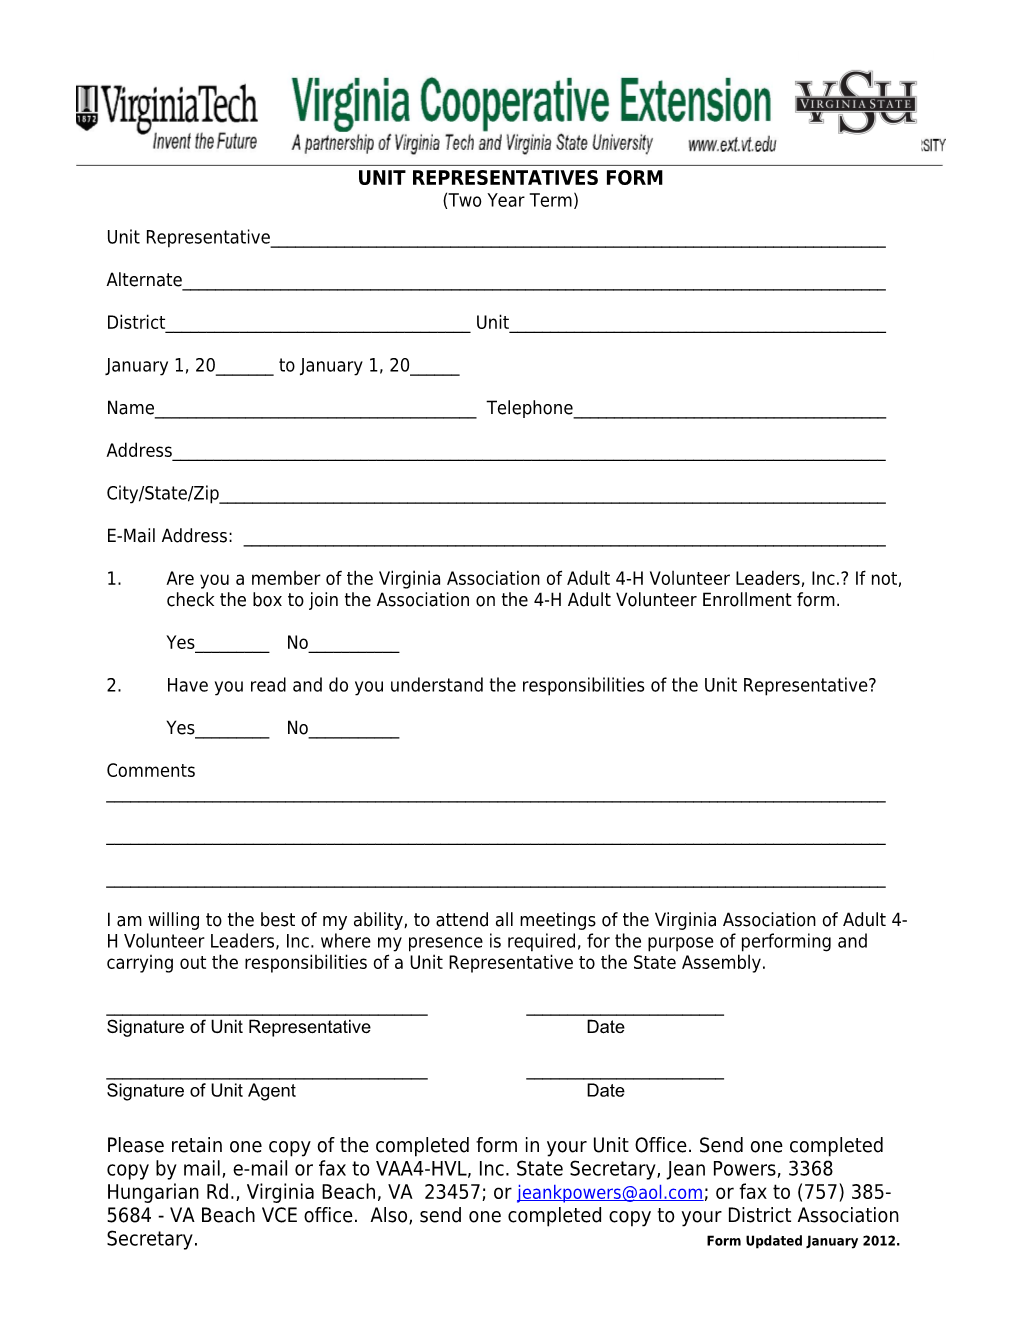 Unit Representatives Form